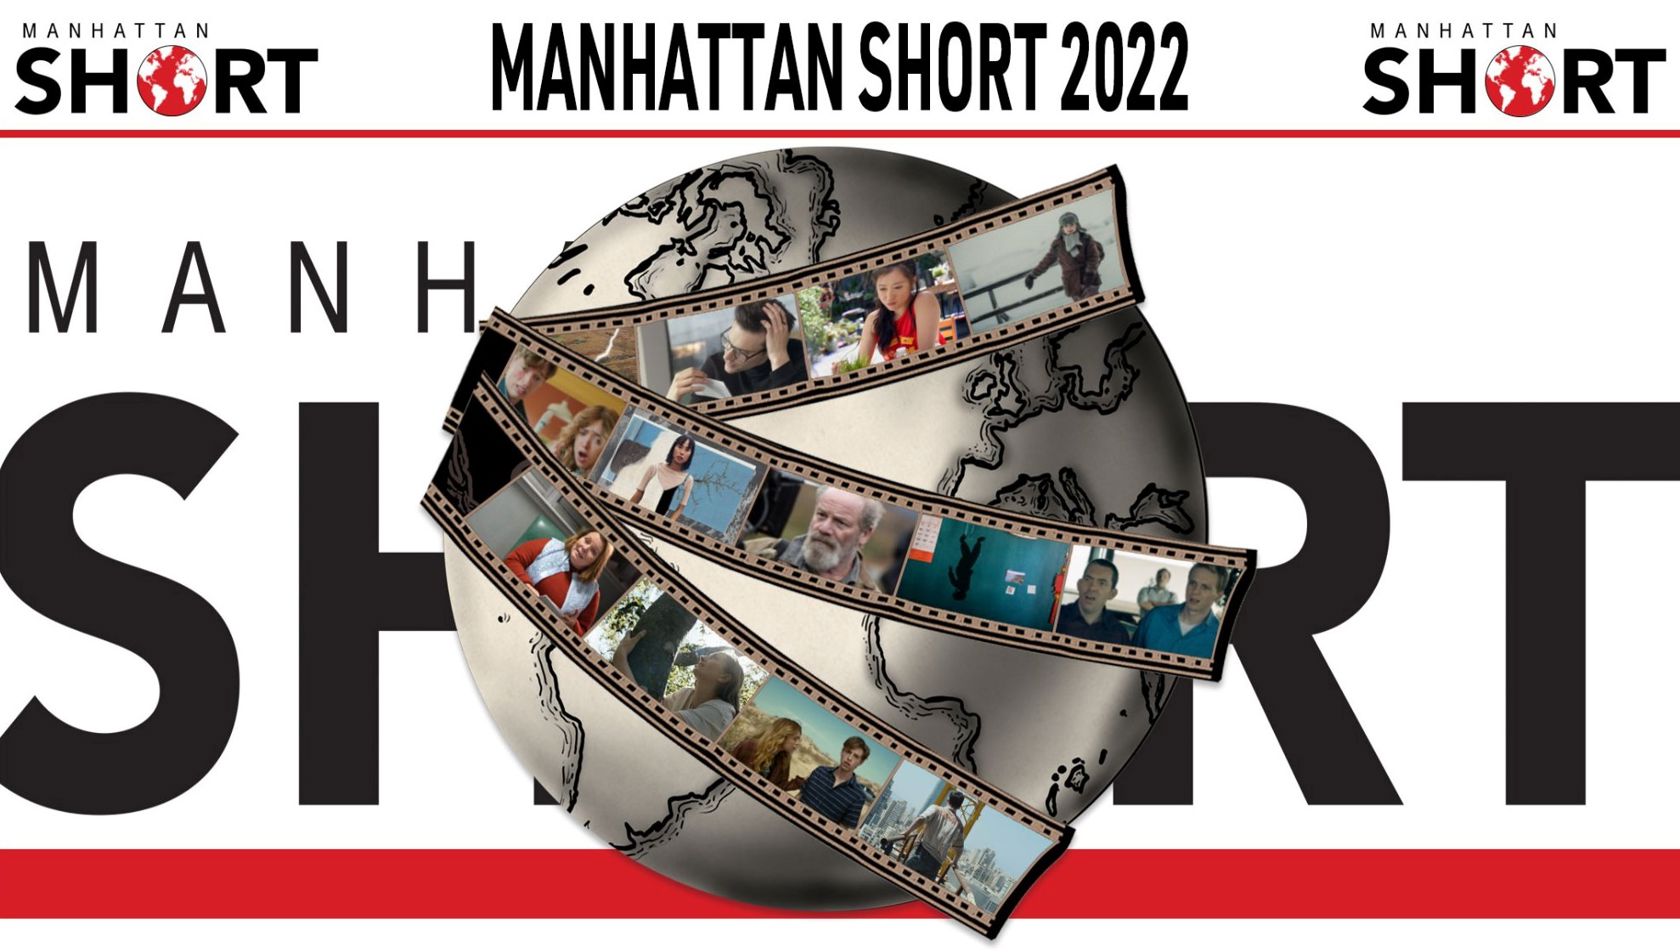 MANHATTAN SHORT 25th Annual Film Festival Cinestudio